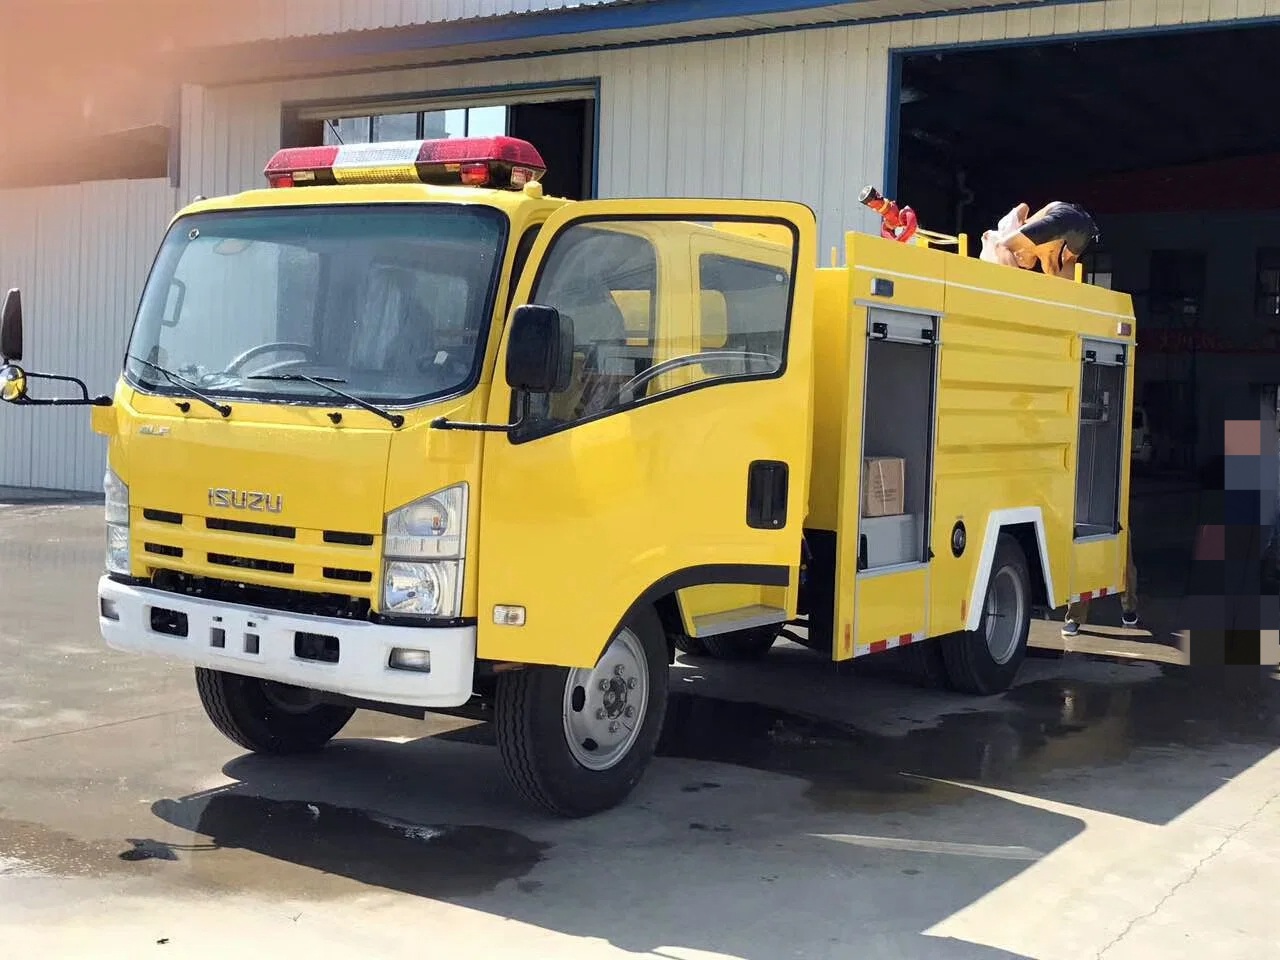 Yellow fire truck